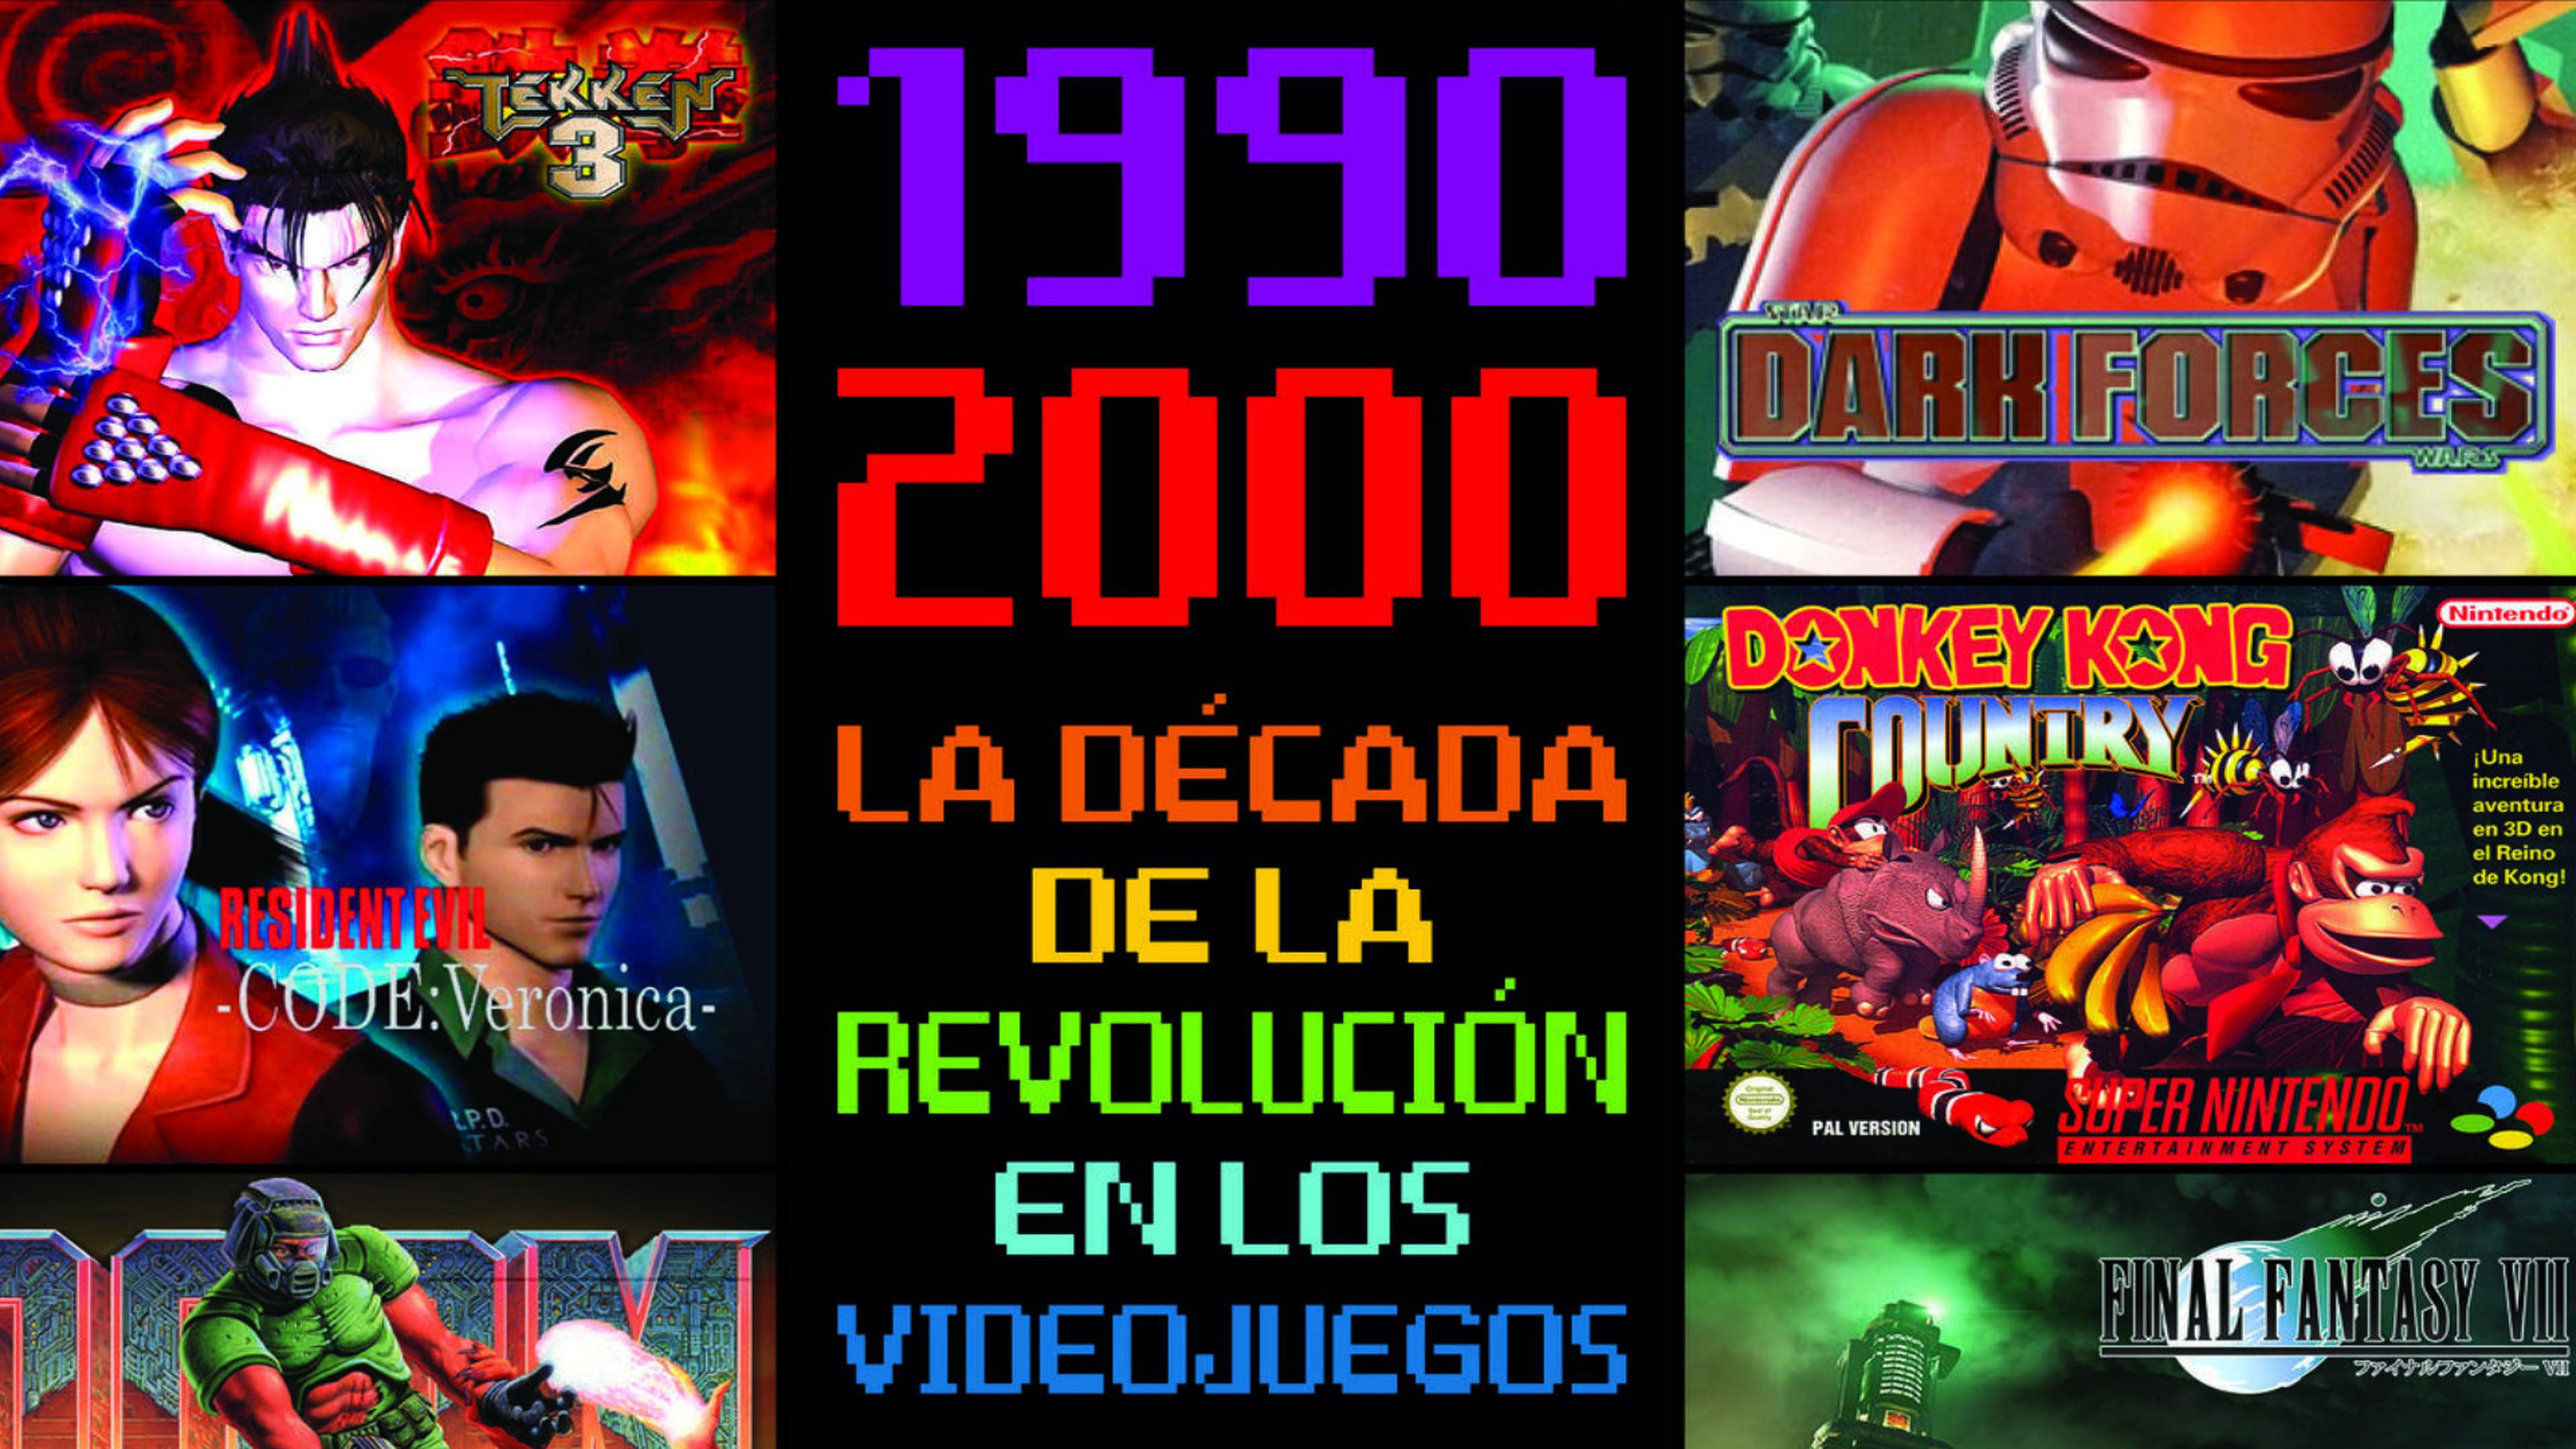 1990-2000